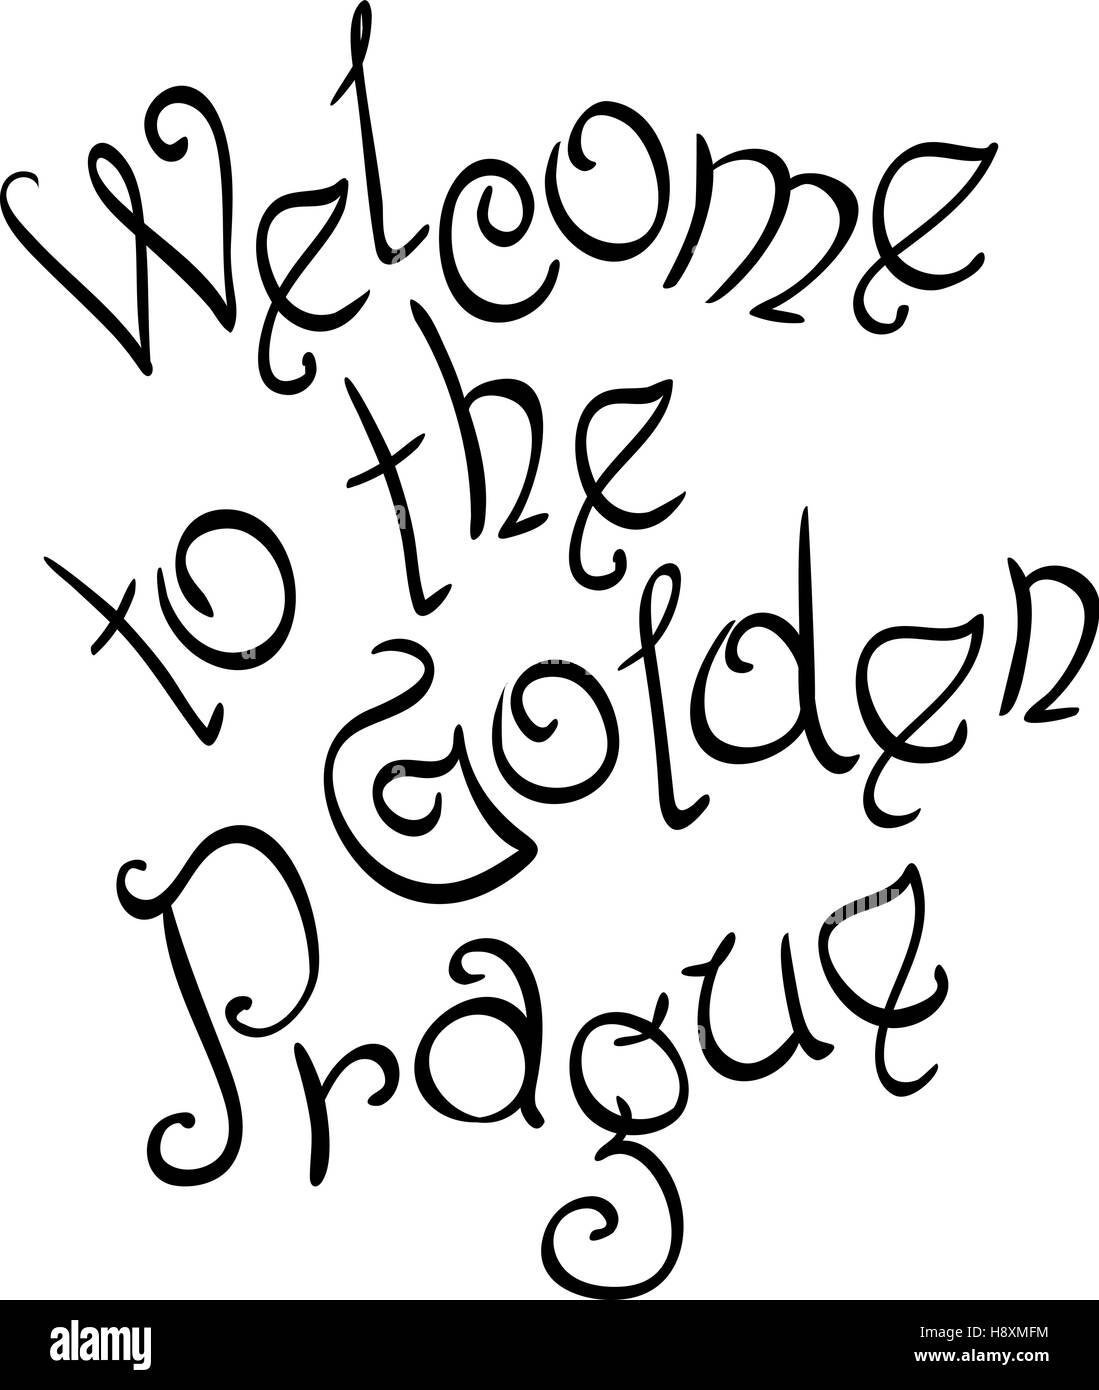 Benvenuti al Golden Prague iscrizione Illustrazione Vettoriale